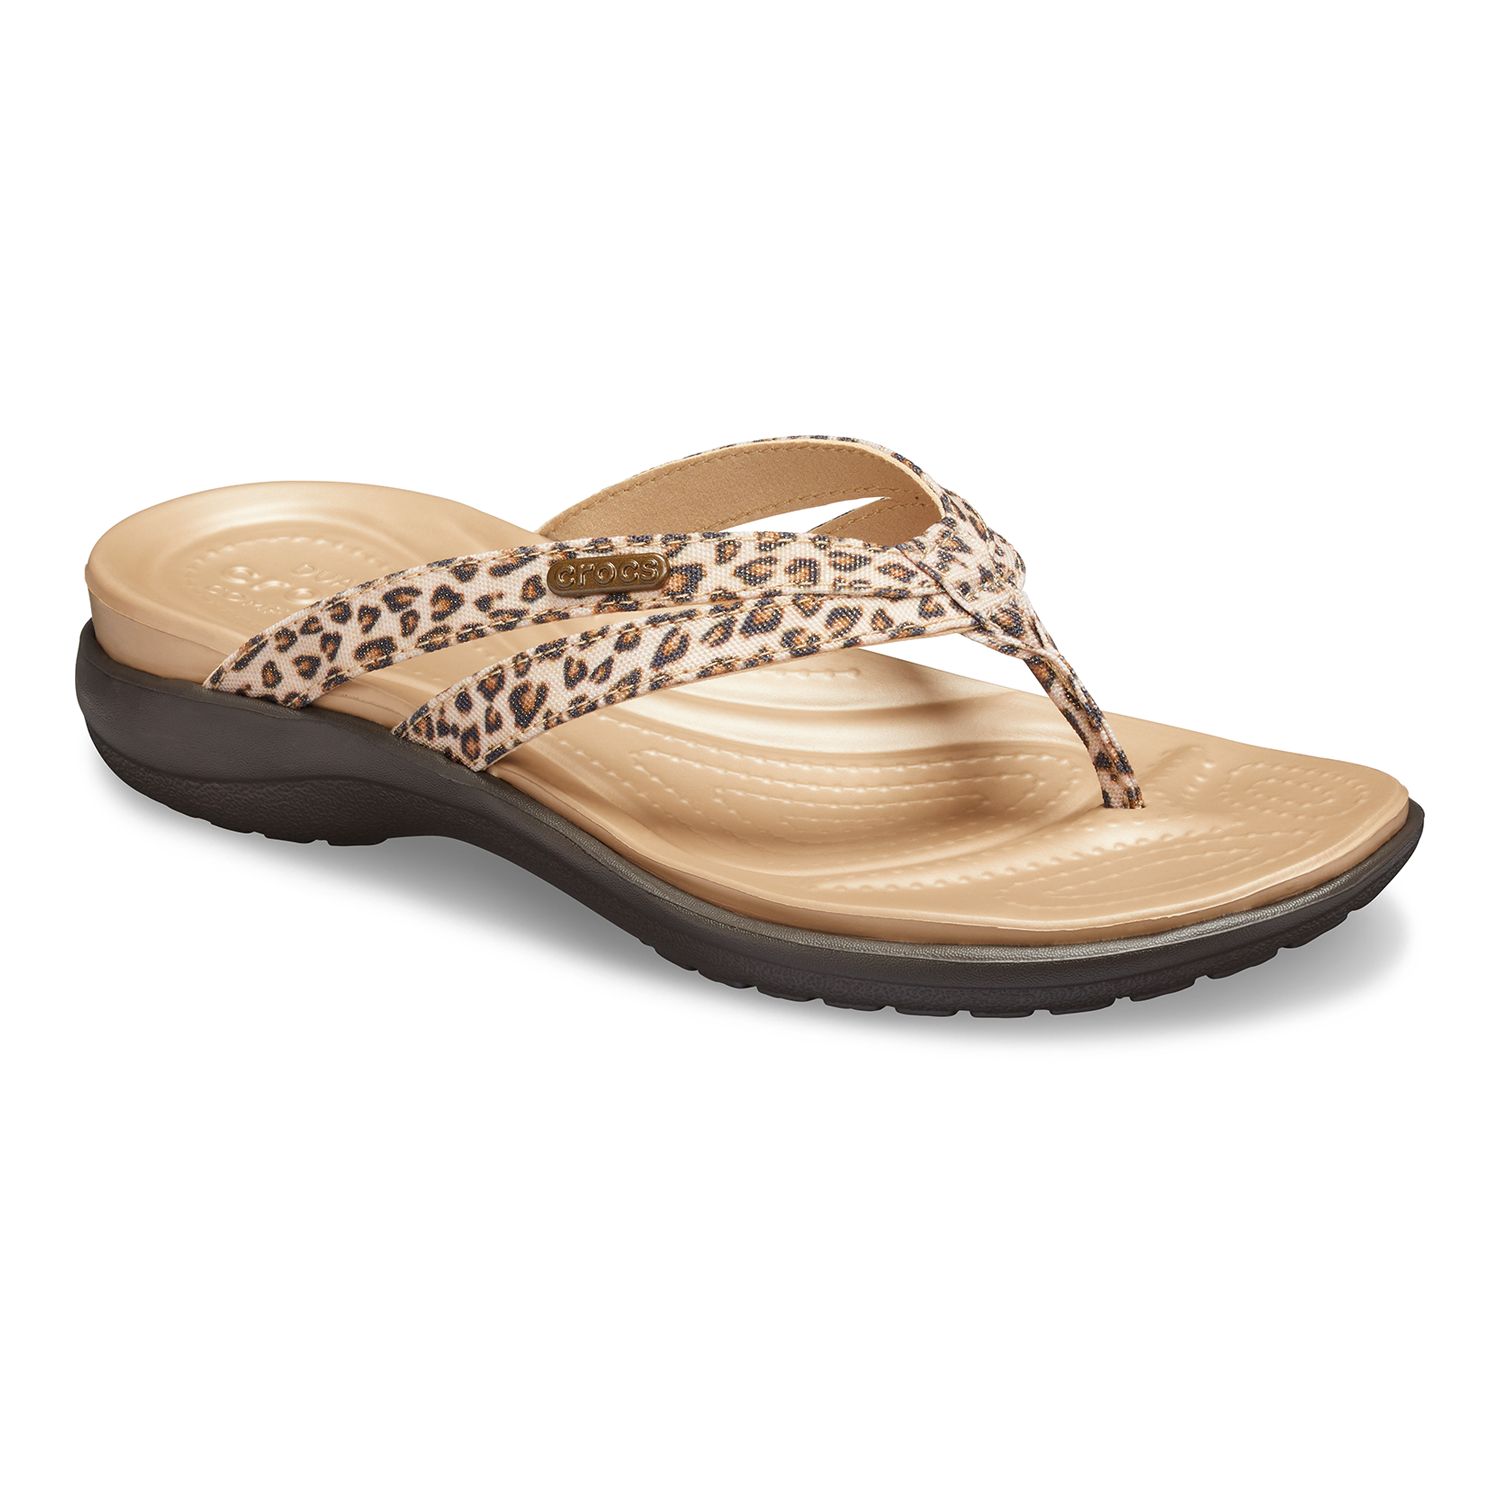 leopard print crocs sandals